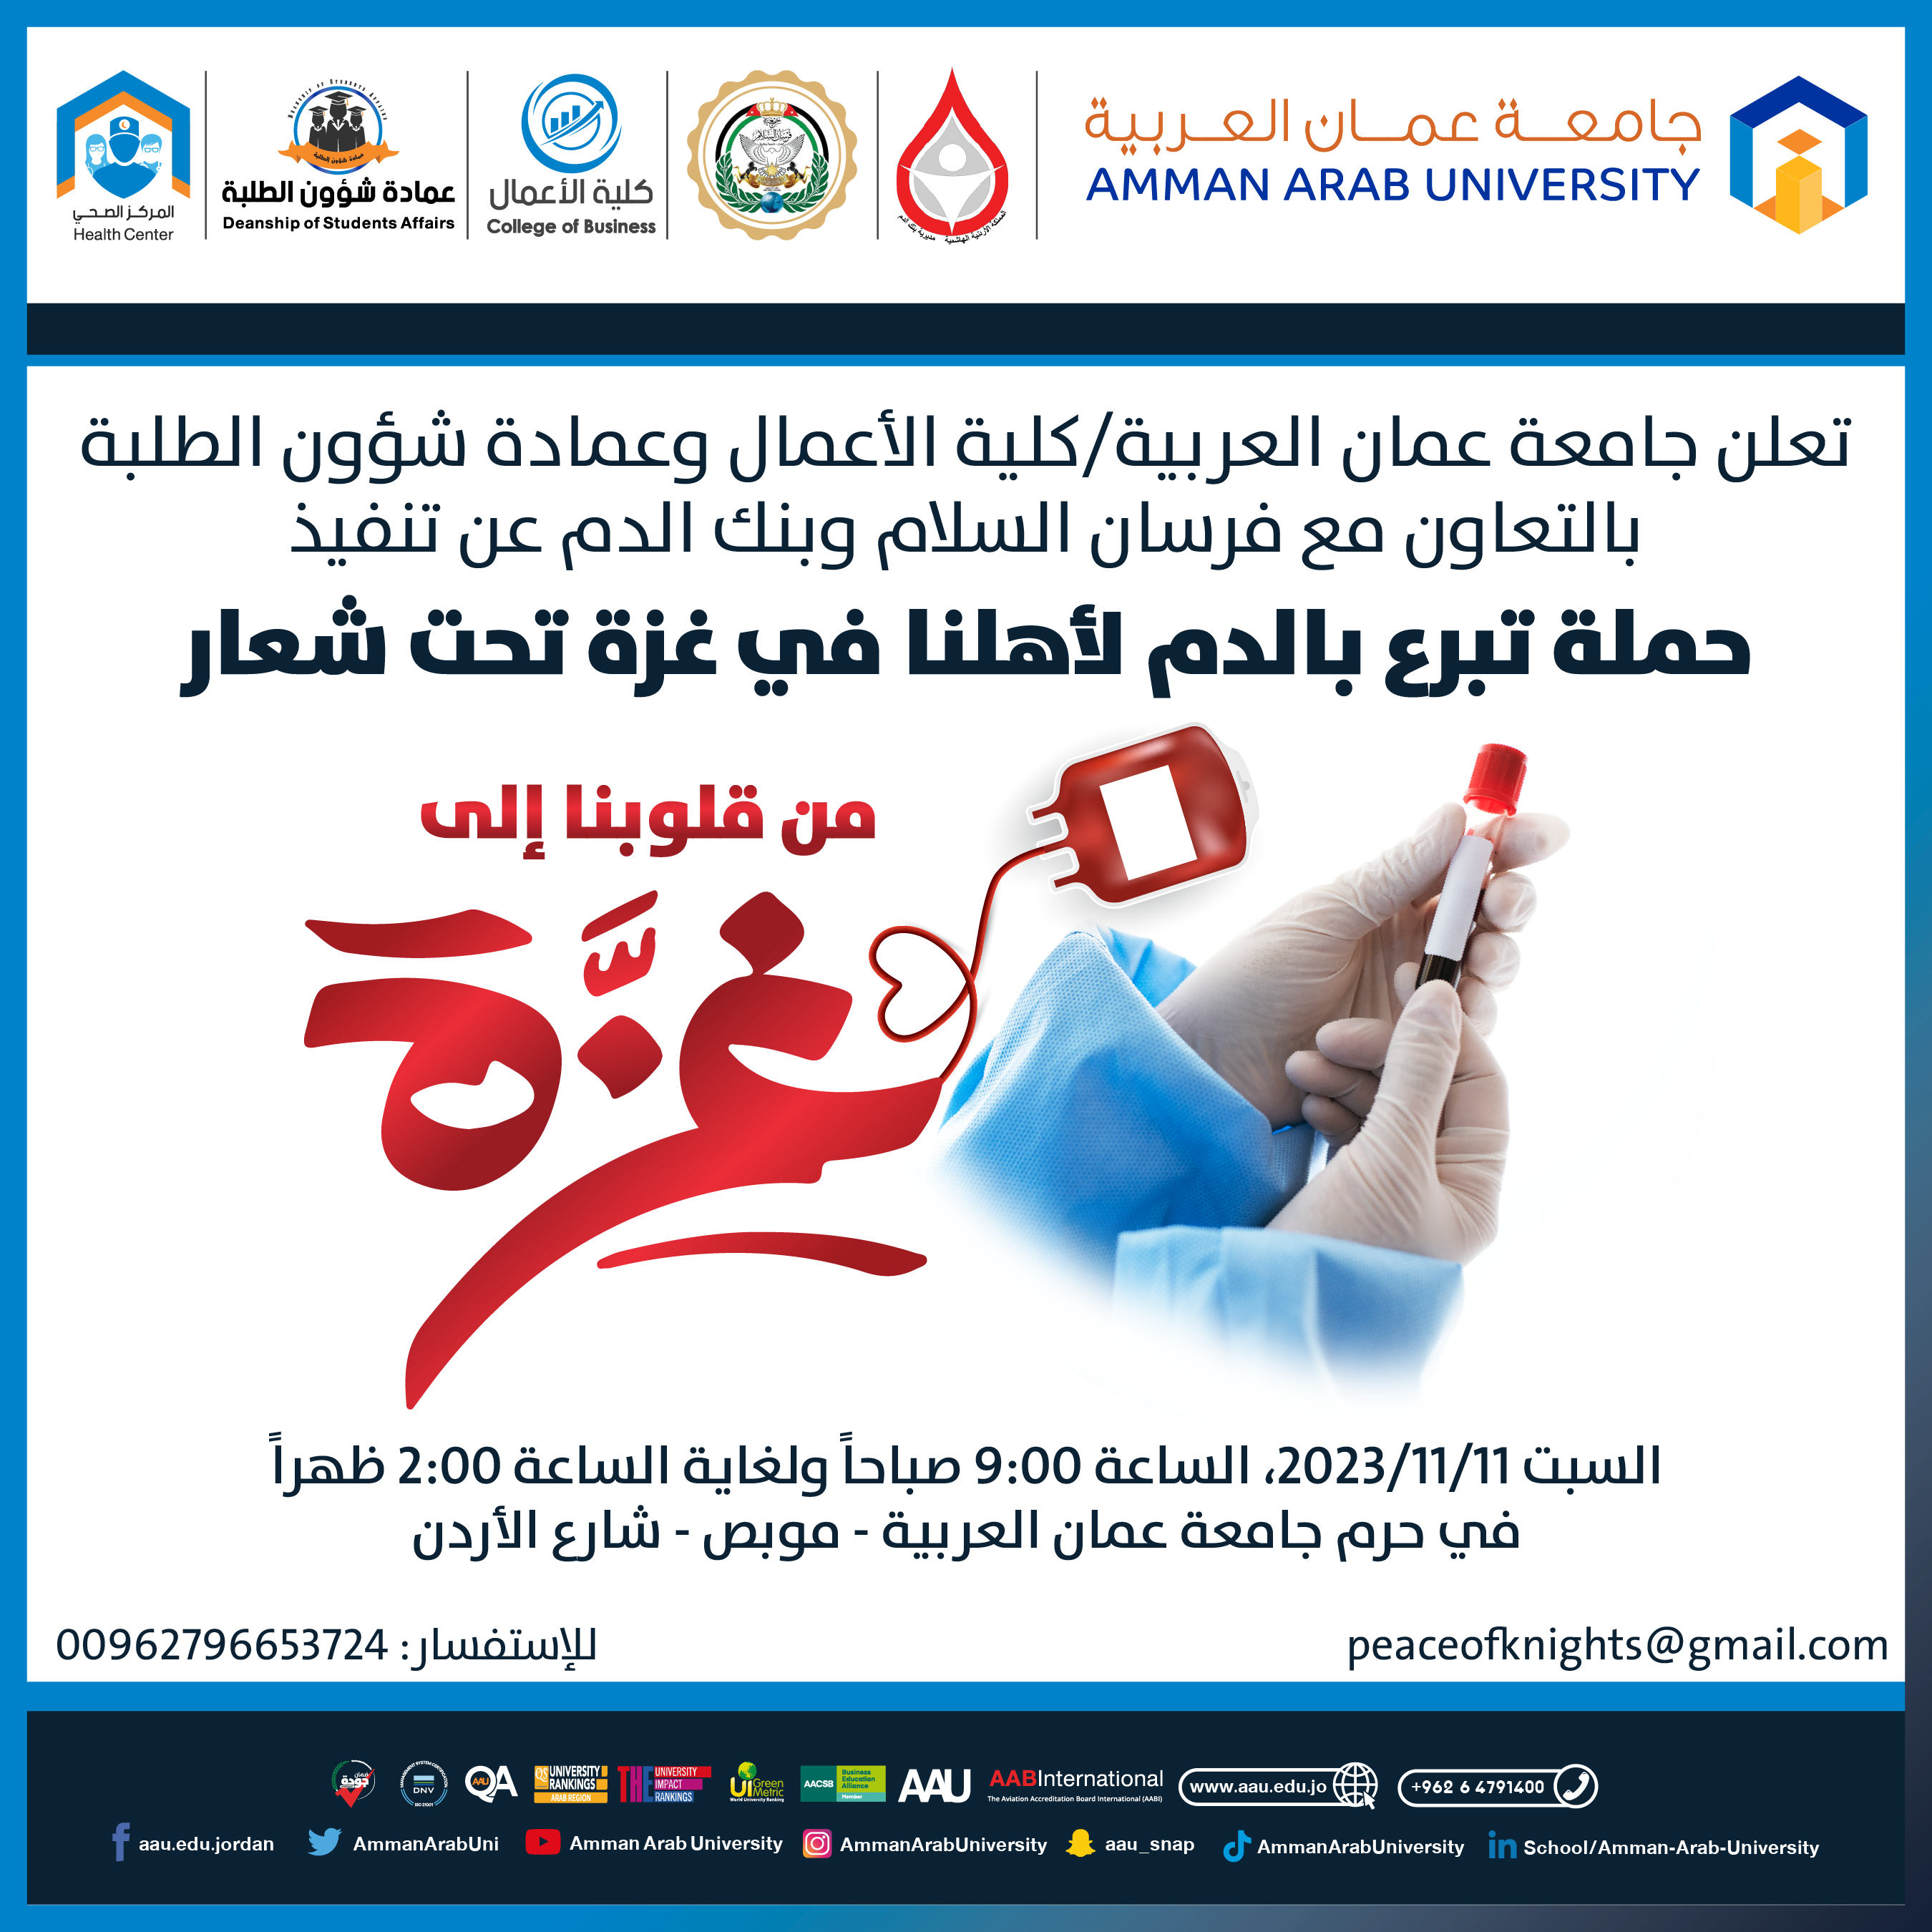 اعلان حملة التبرع بالدم لاهلنا في غزة